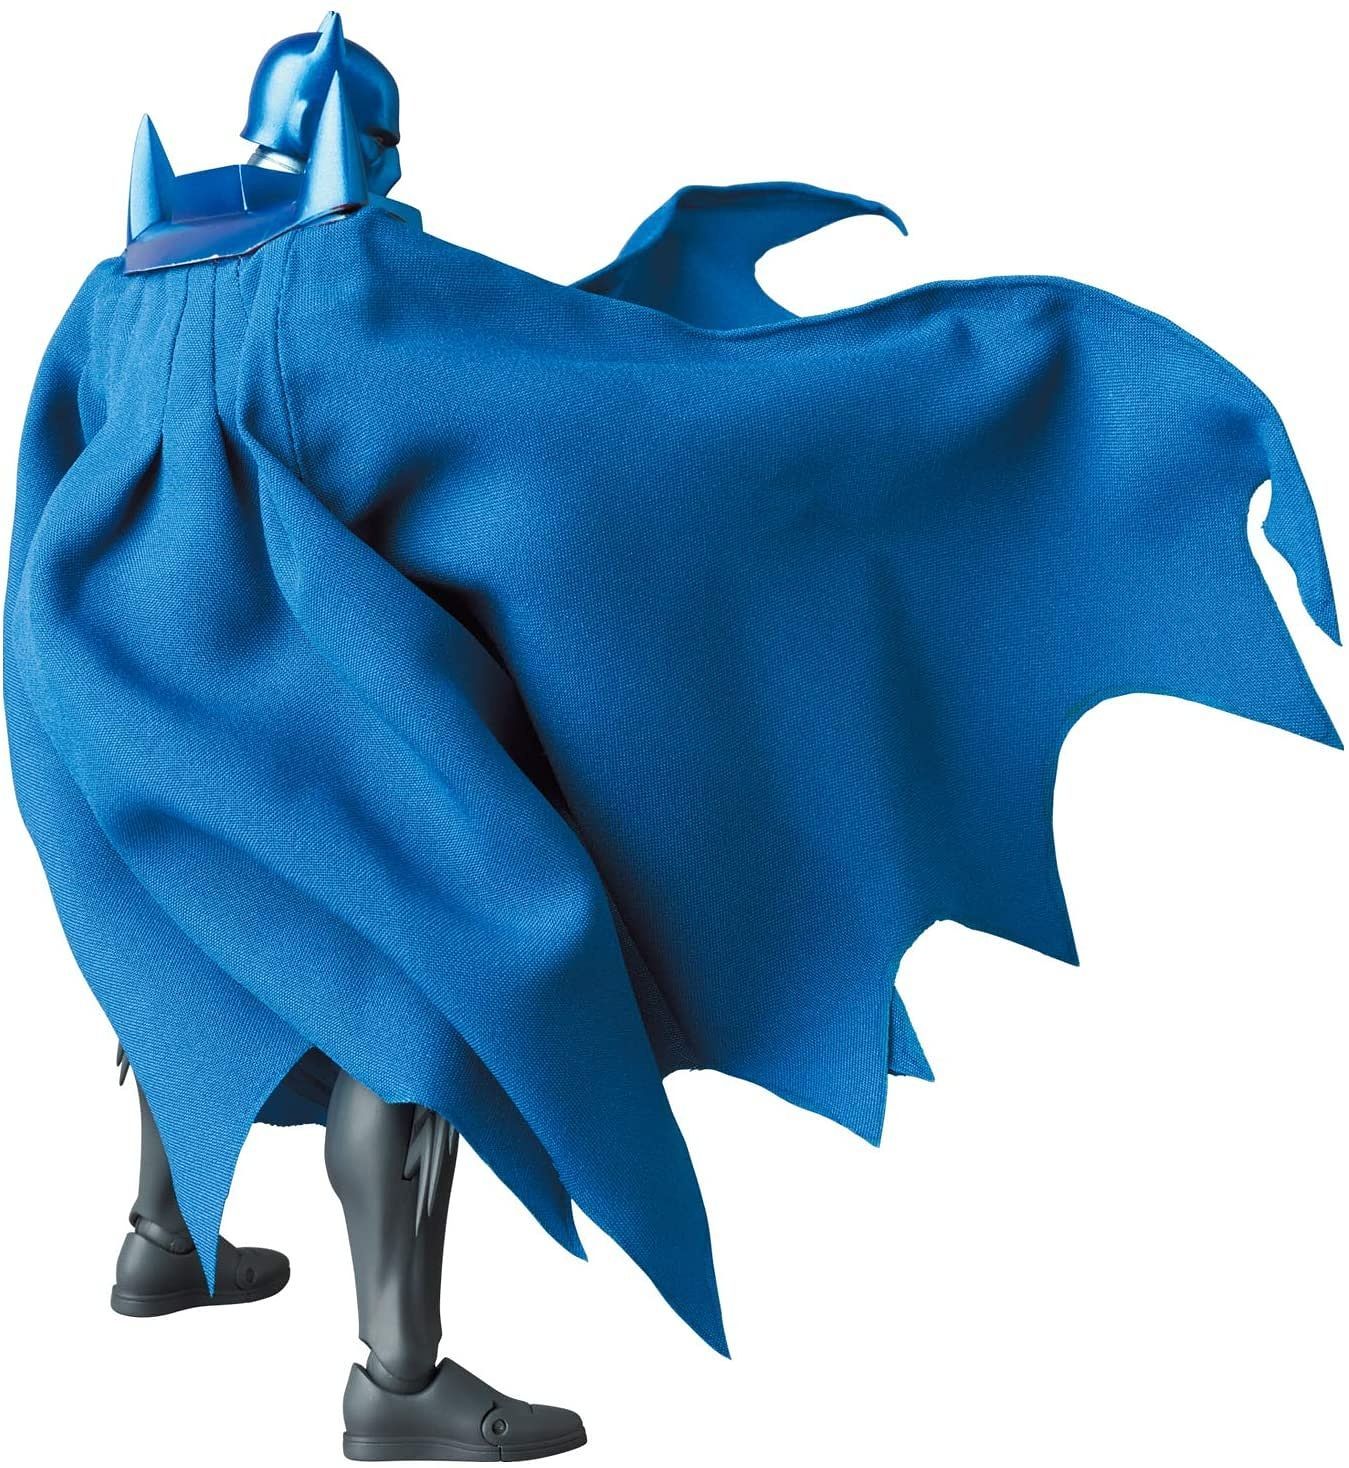 Medicom - MAFEX No. 144 - DC Comics - Batman: Knightfall - Azrael Batman - Marvelous Toys